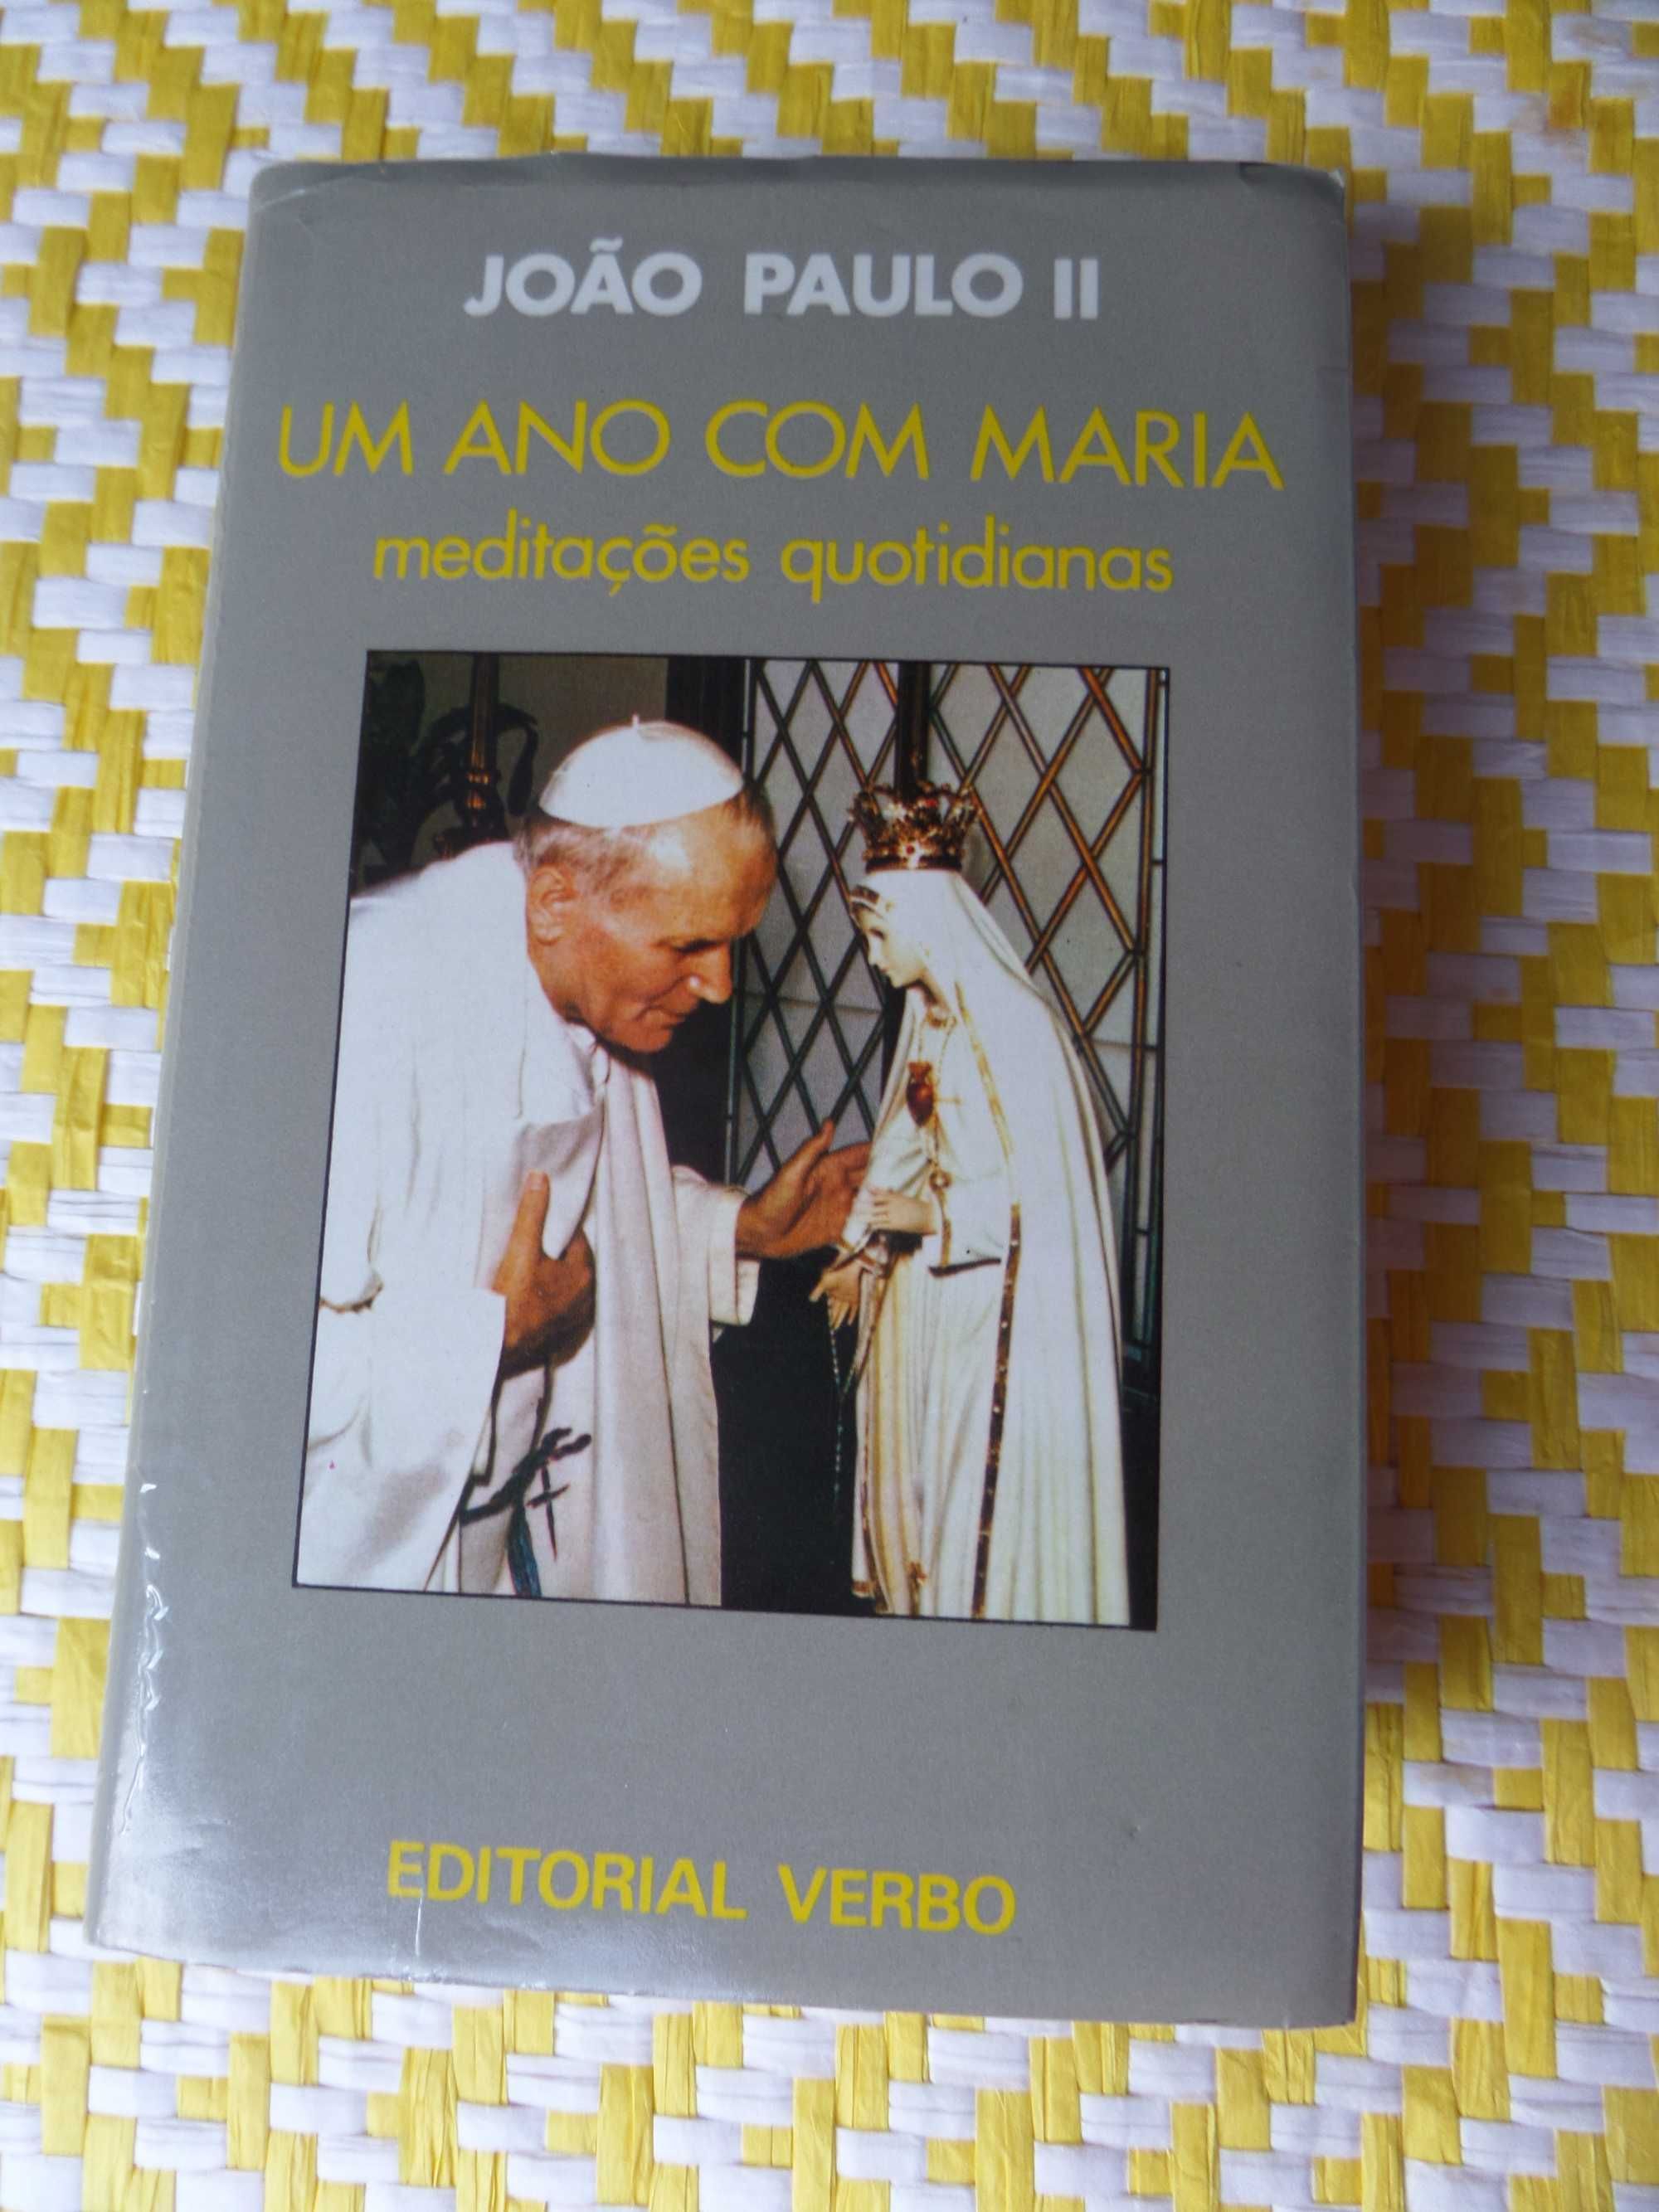 João Paulo II- Um ano com Maria
Meditações quotidianas